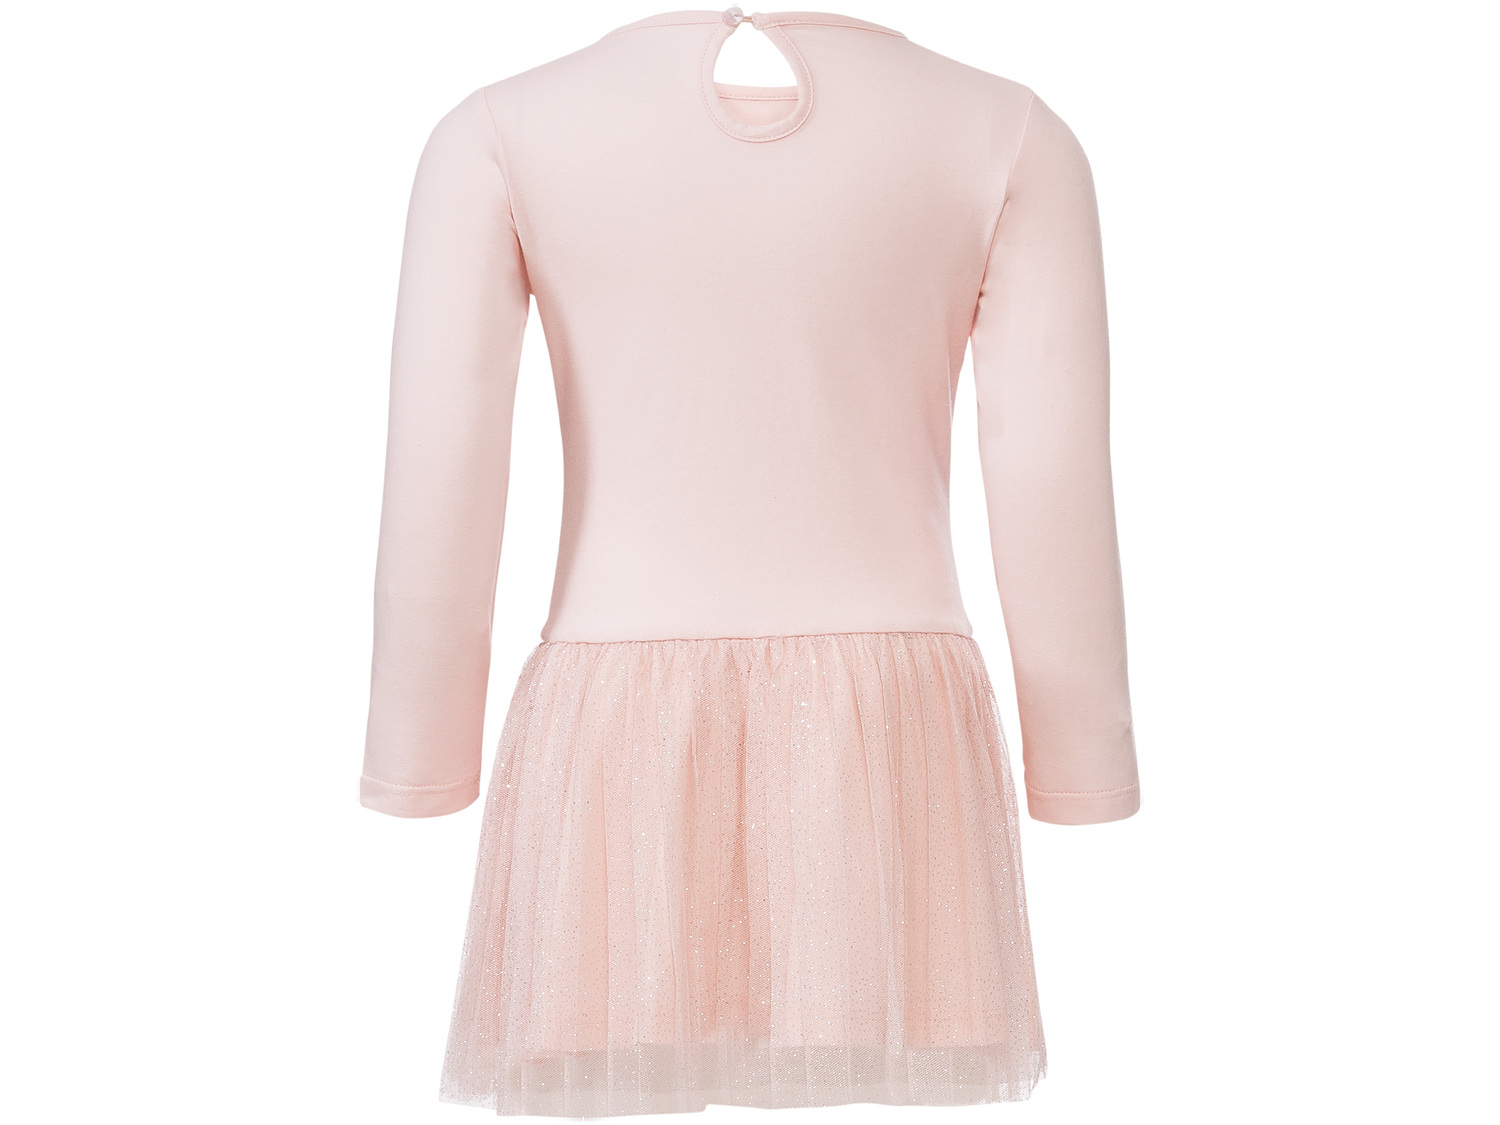 Elegancka sukienka Oeko Tex, cena 34,99 PLN 
- rozmiary: 86-116
- świecące drobinki
- ...